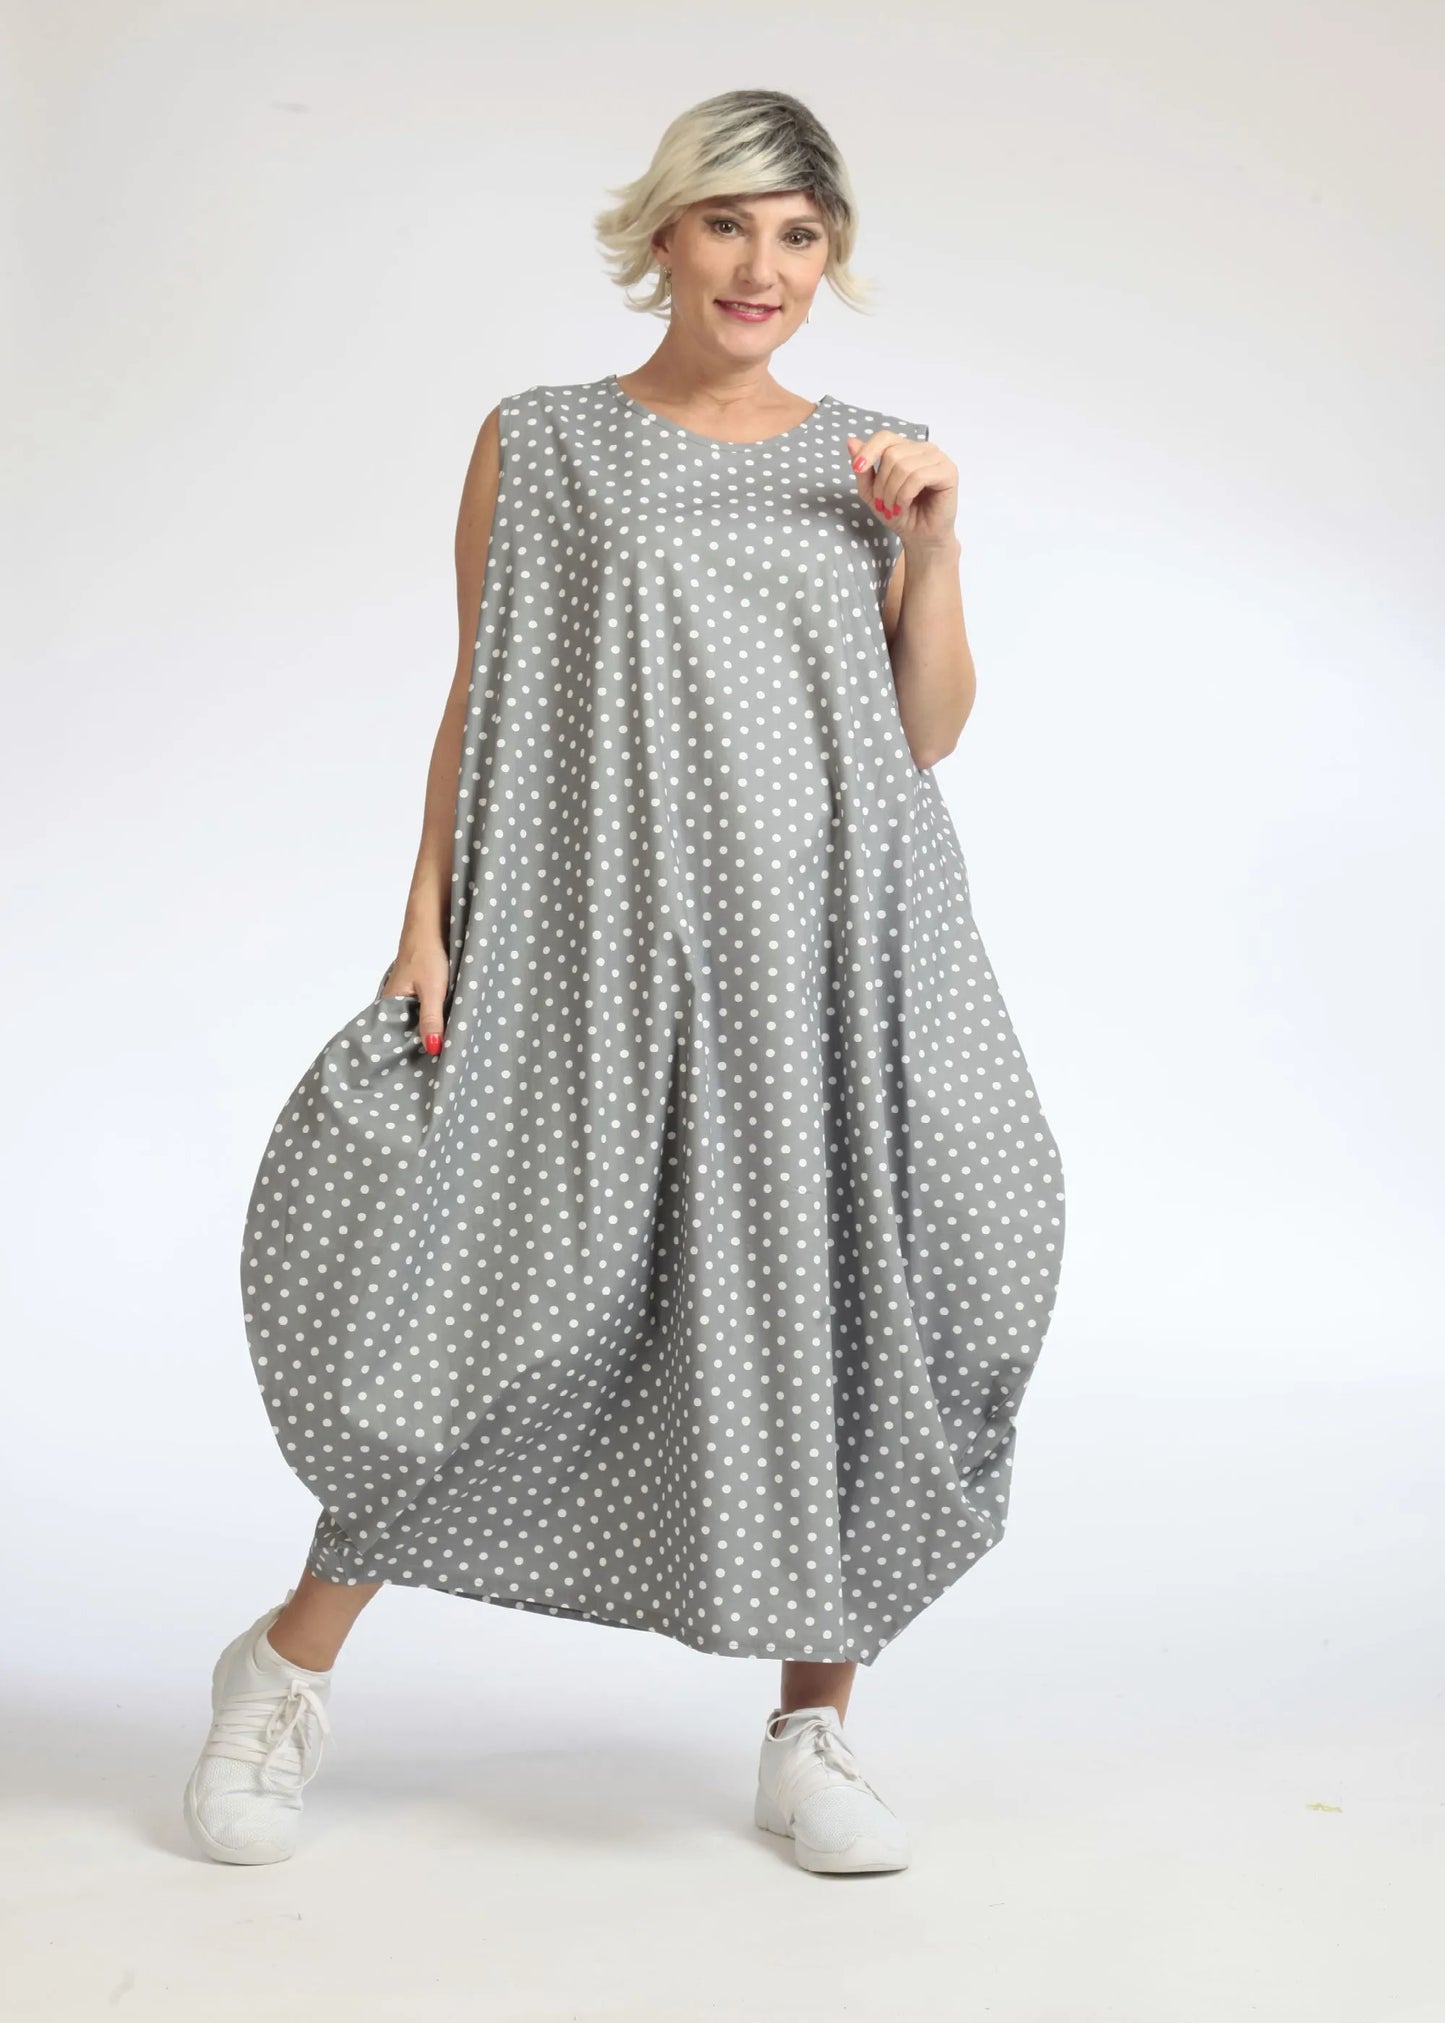 Sommer Kleid in Ballon Form aus glatter Popeline Qualität, Freya in Grau-Weiß